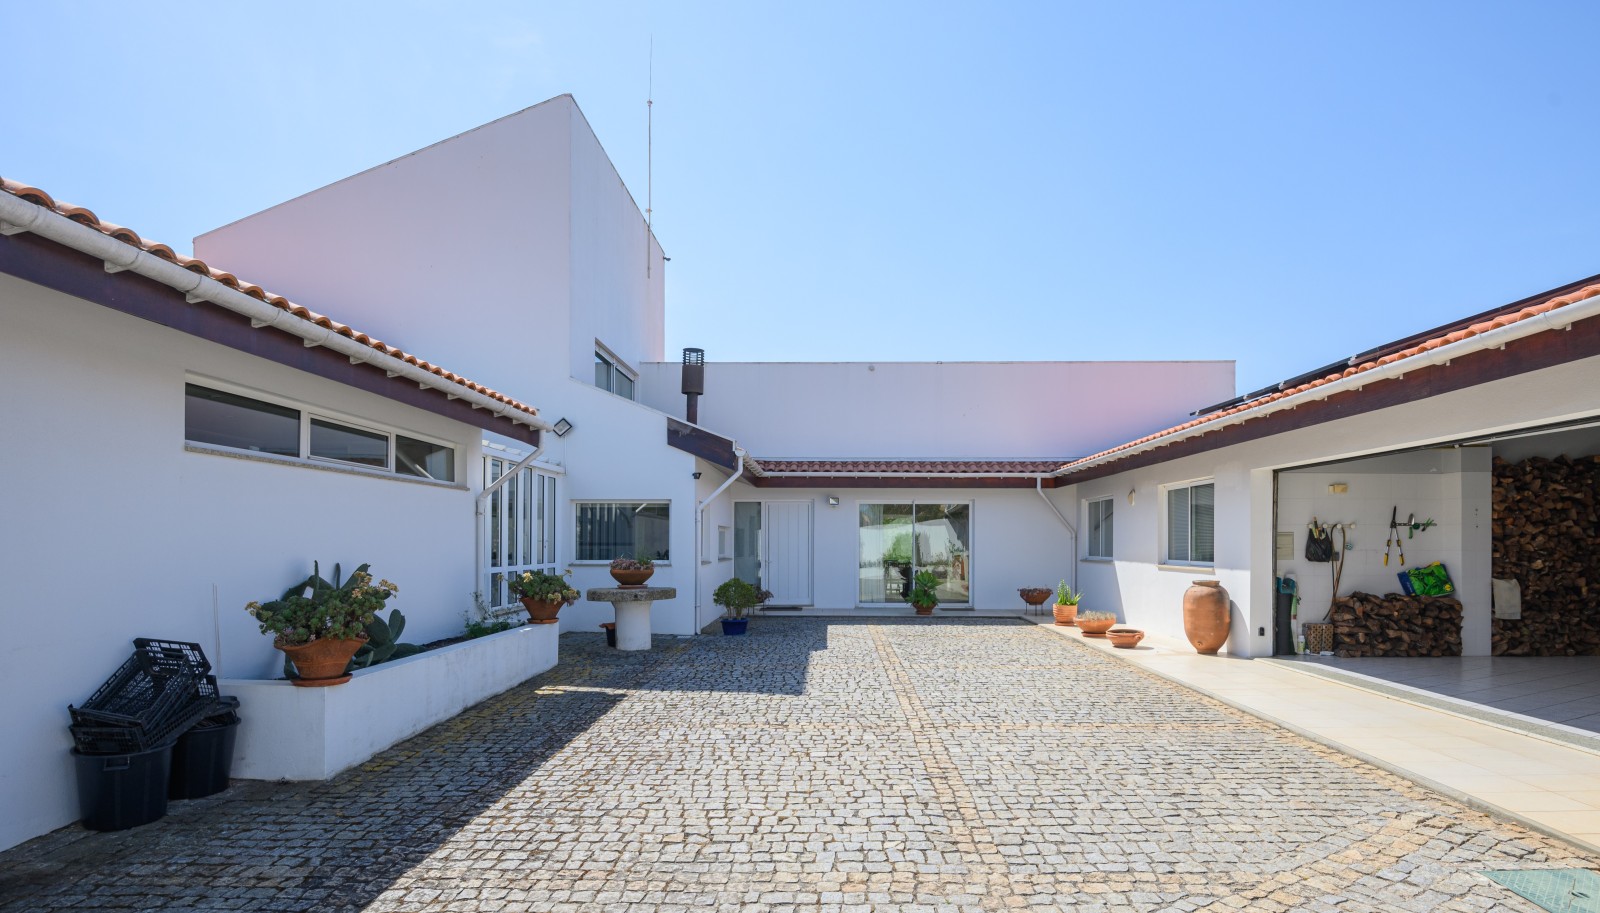 Villa mit Pool und Garten, zu verkaufen, in Valadares, V. N. Gaia, Portugal_227031